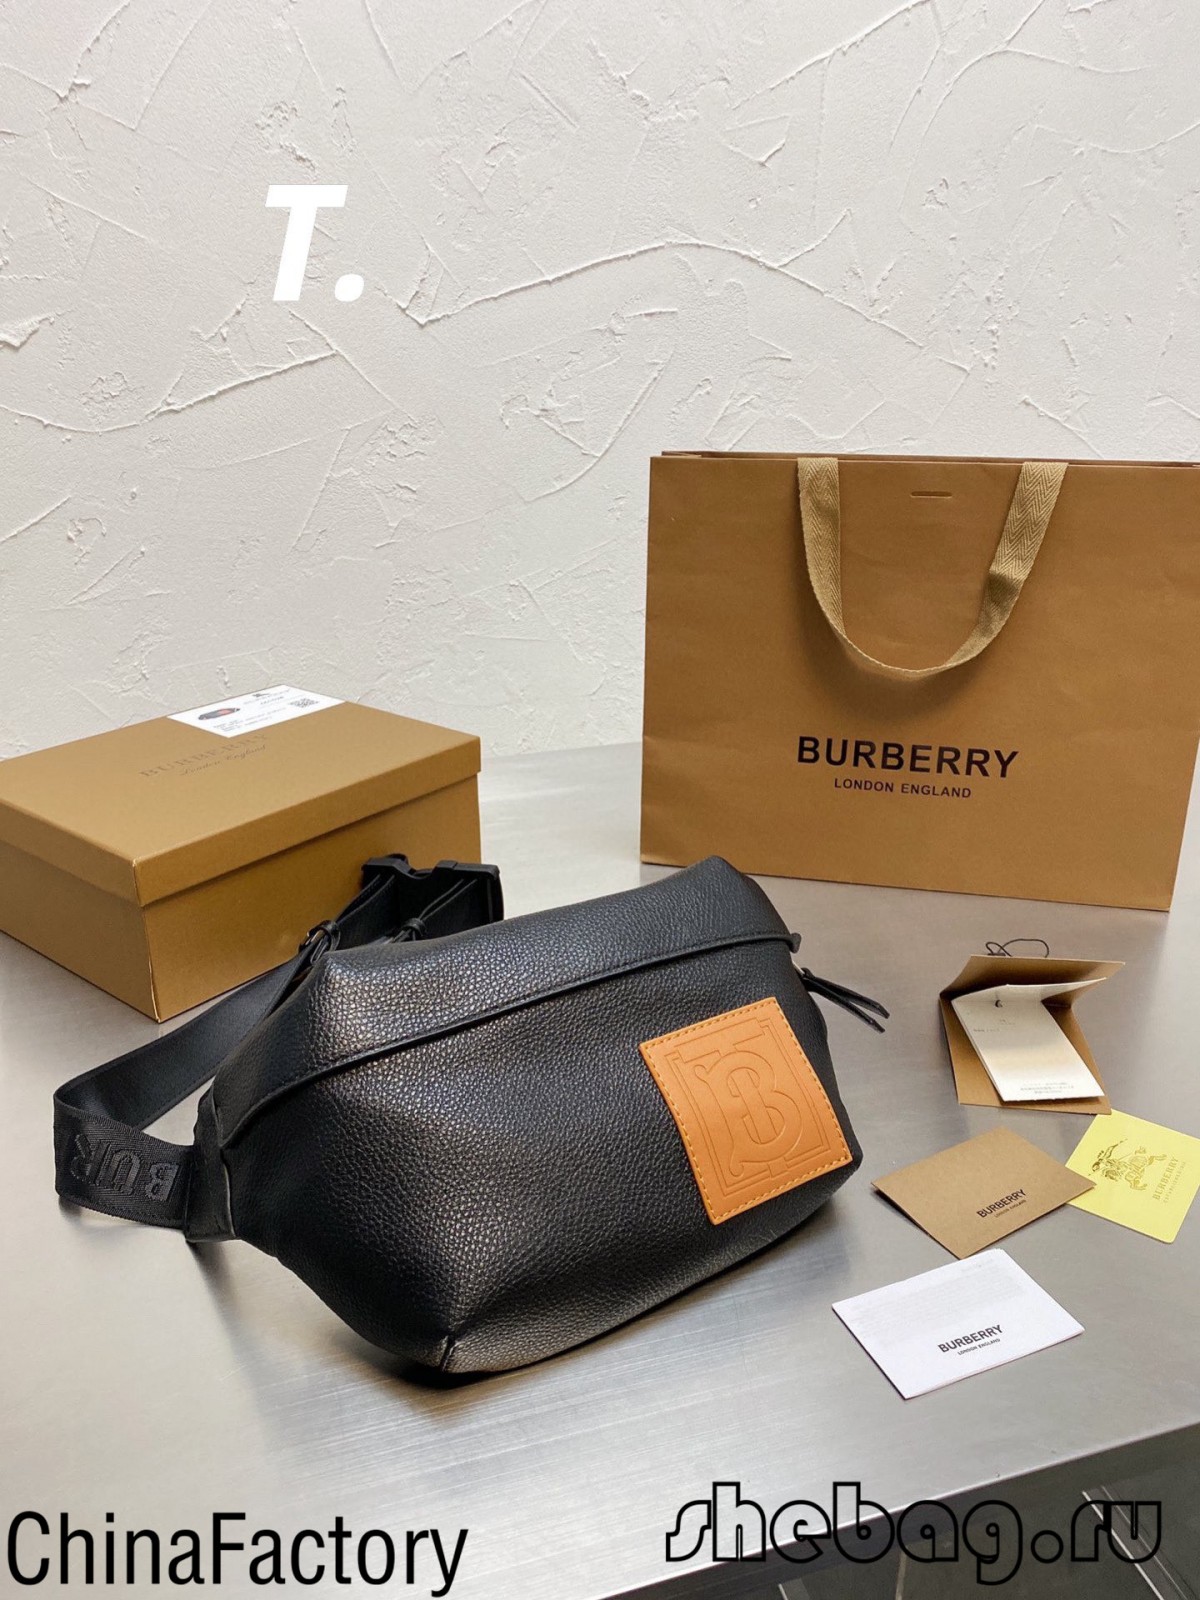 ຂ້ອຍສາມາດຊື້ຖົງສາຍແອວ Balenciaga replica ໃນກວາງໂຈວ, ຈີນໄດ້ບໍ? (2022 ລ່າ​ສຸດ)-ຮ້ານ​ຂາຍ​ຖົງ Louis Vuitton ປອມ​ທີ່​ມີ​ຄຸນ​ນະ​ພາບ​ດີ​ທີ່​ສຸດ, Replica designer bag ru